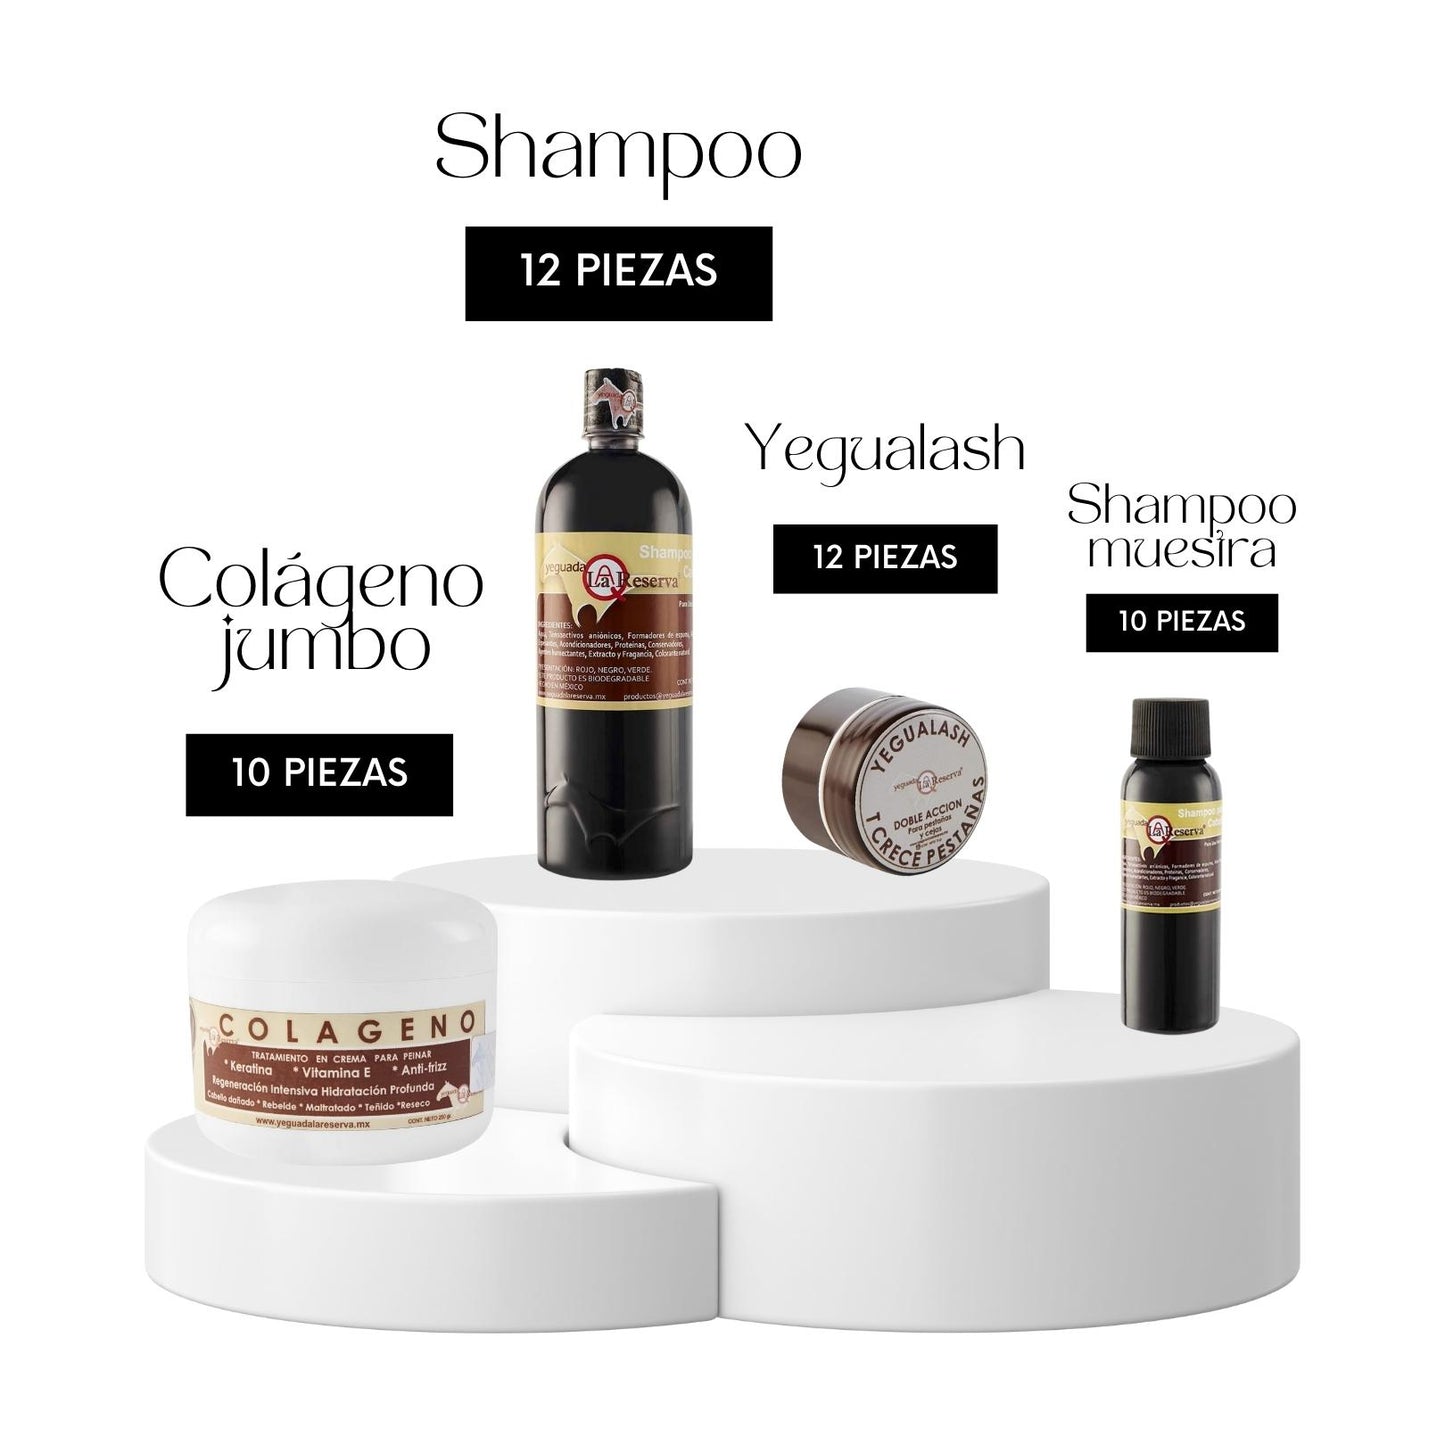 12 pcs shampoo + 10 pcs jumbo collagen + 12 pcs yegualash + 10 pcs mini shampoo